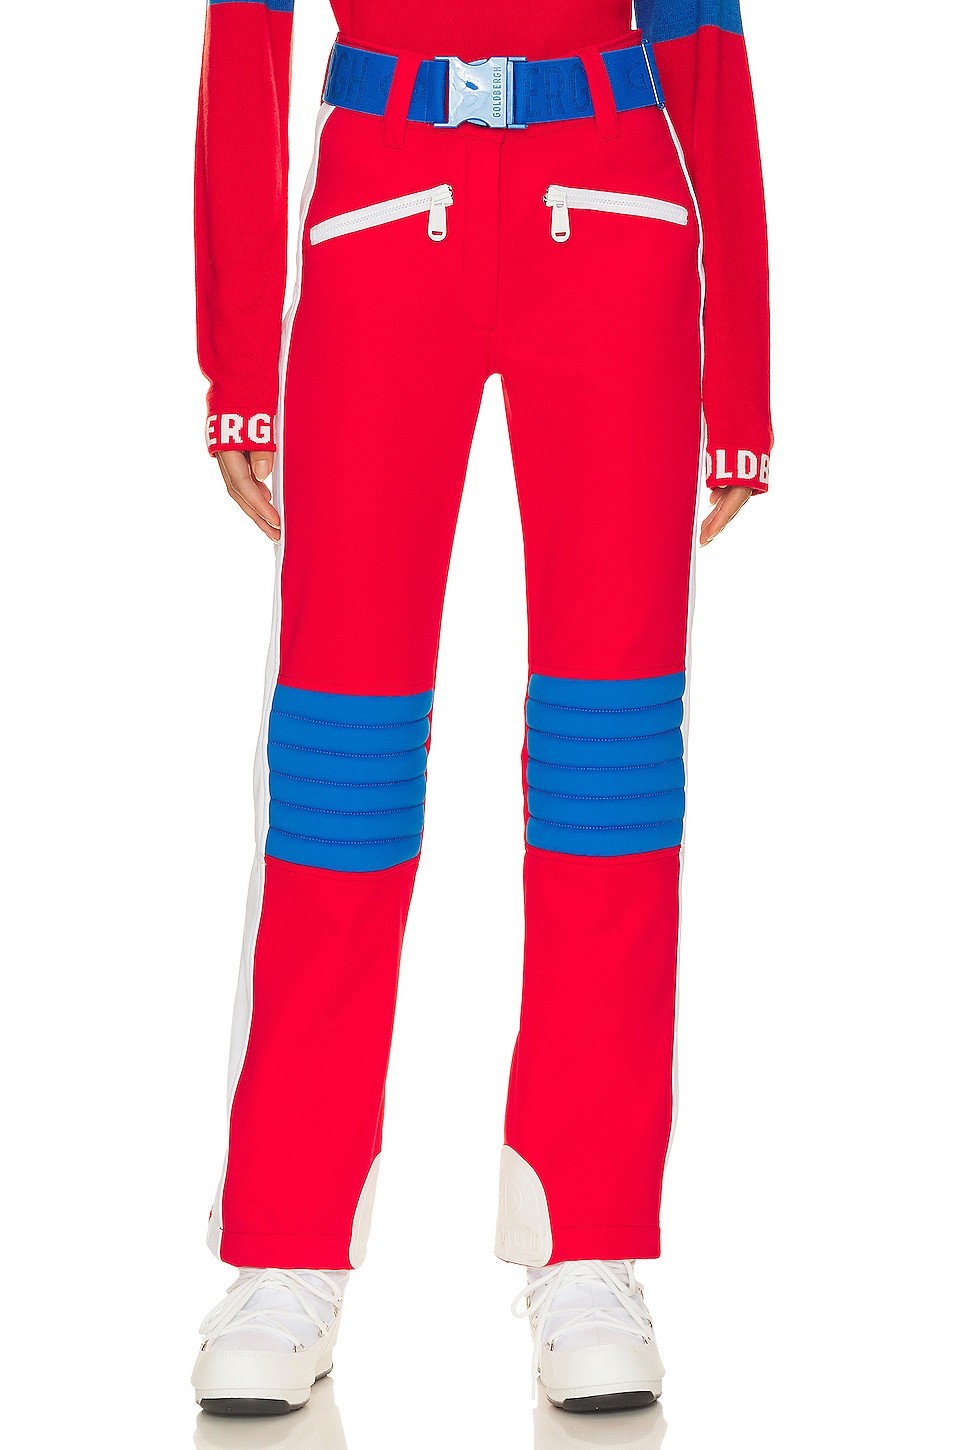 Лыжные брюки Goldbergh Goalie Ski, цвет Flame